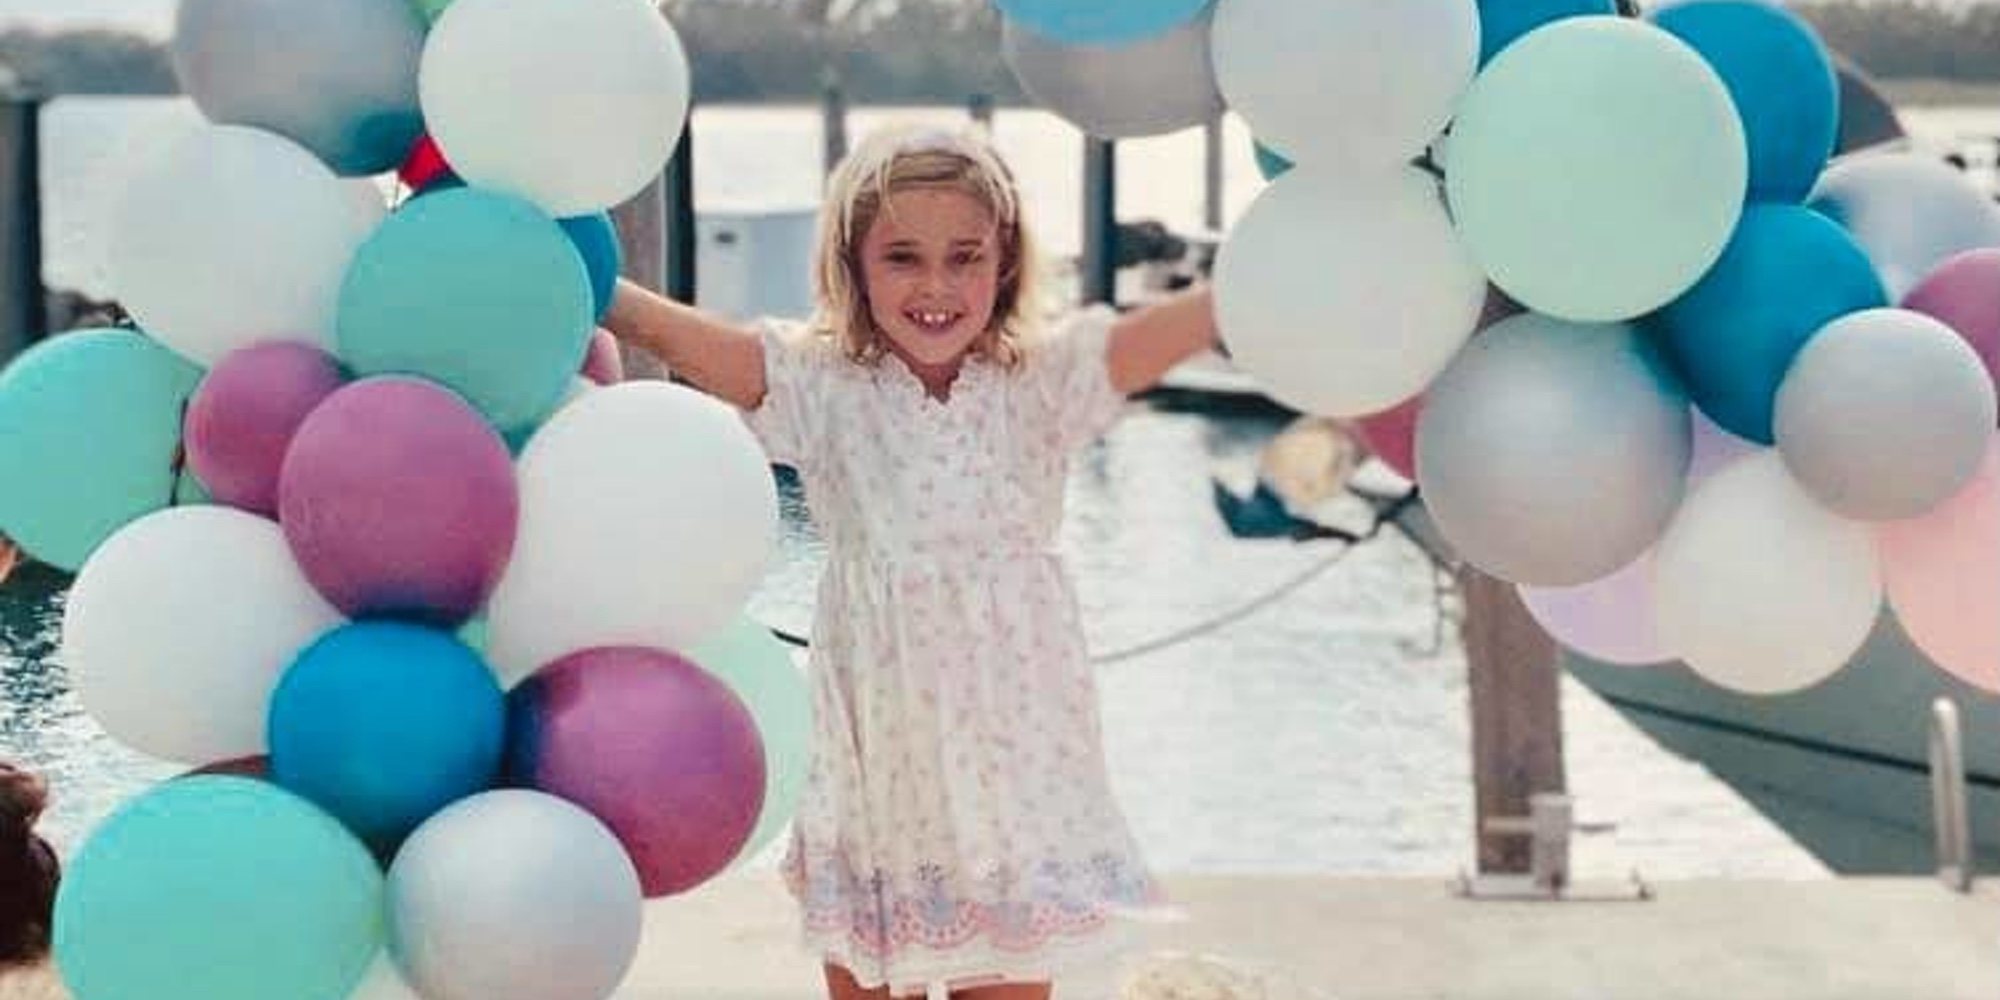 La Princesa Leonor de Suecia celebra su séptimo cumpleaños siendo "completamente única"